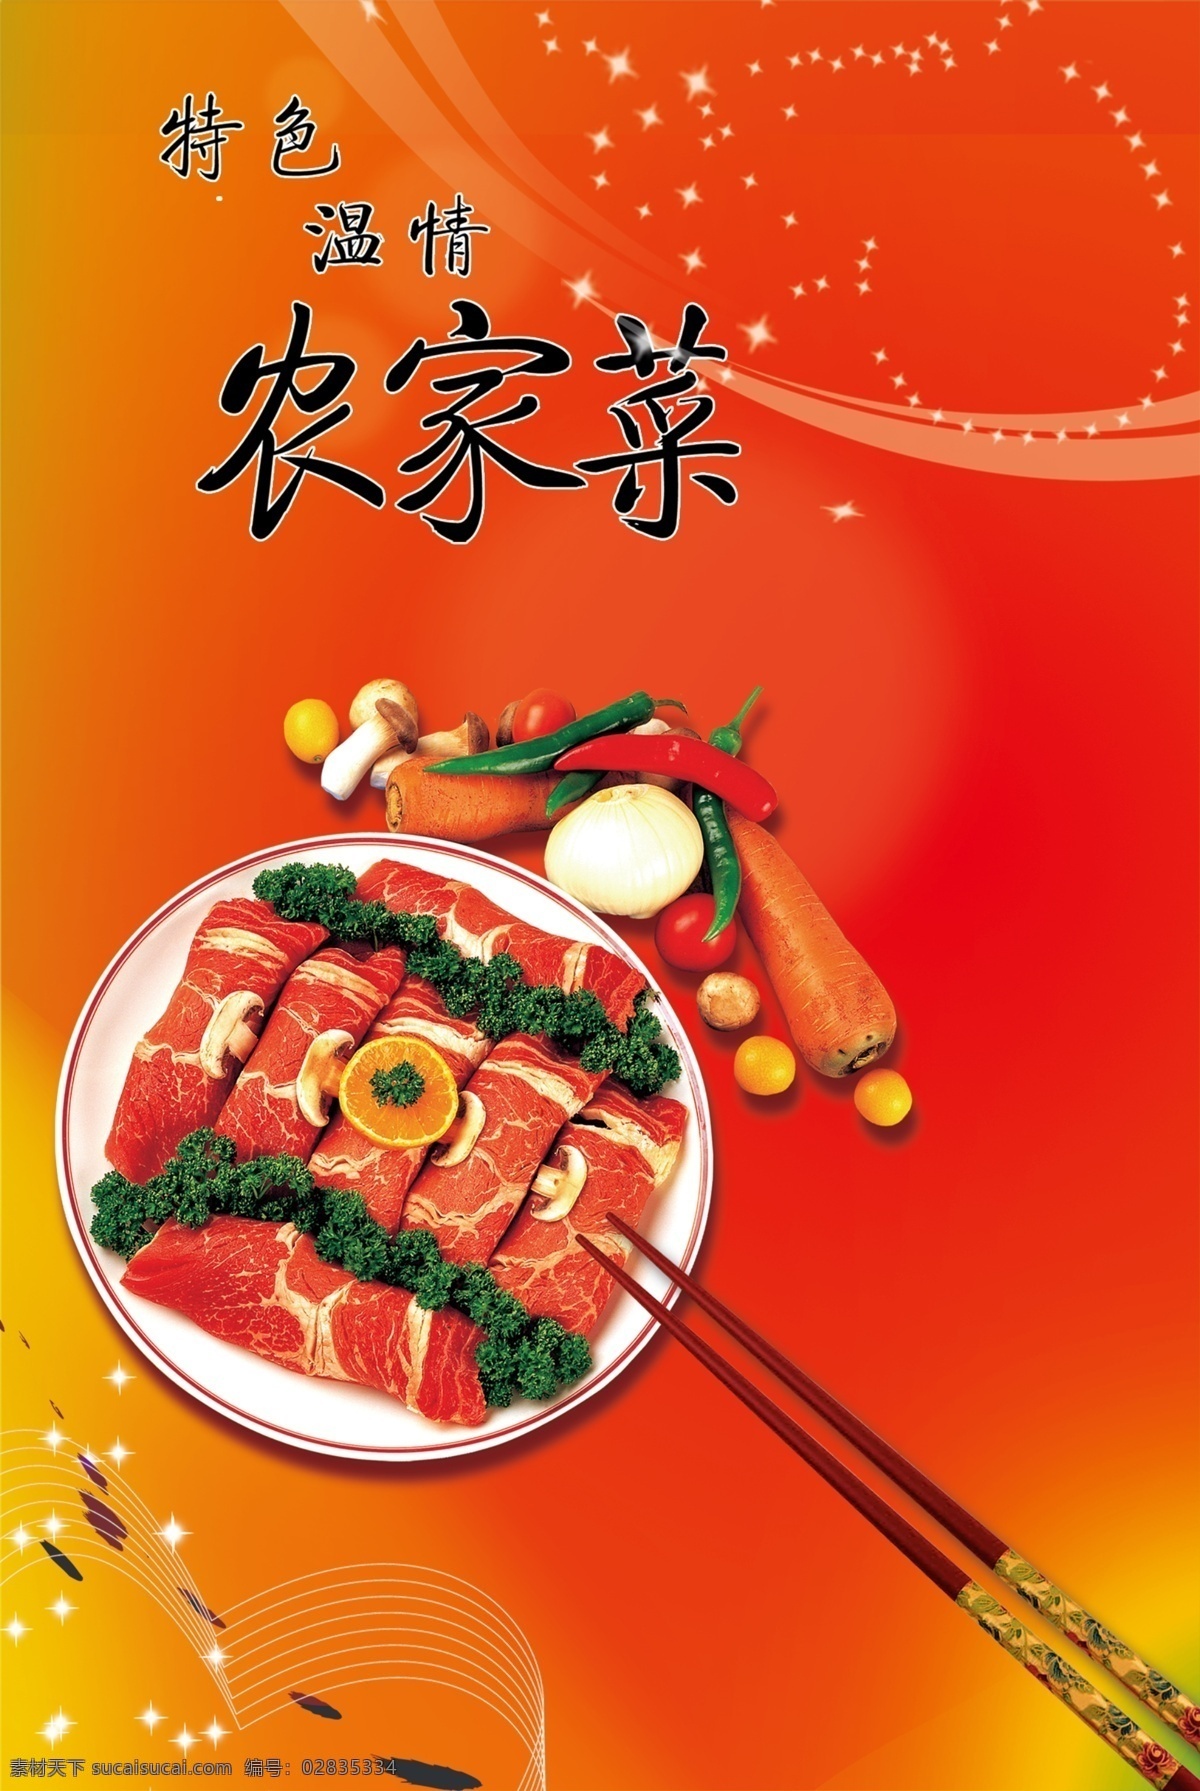 菜 食 展板 分层 红色底板 筷子 肉 蔬菜 源文件 菜食展板